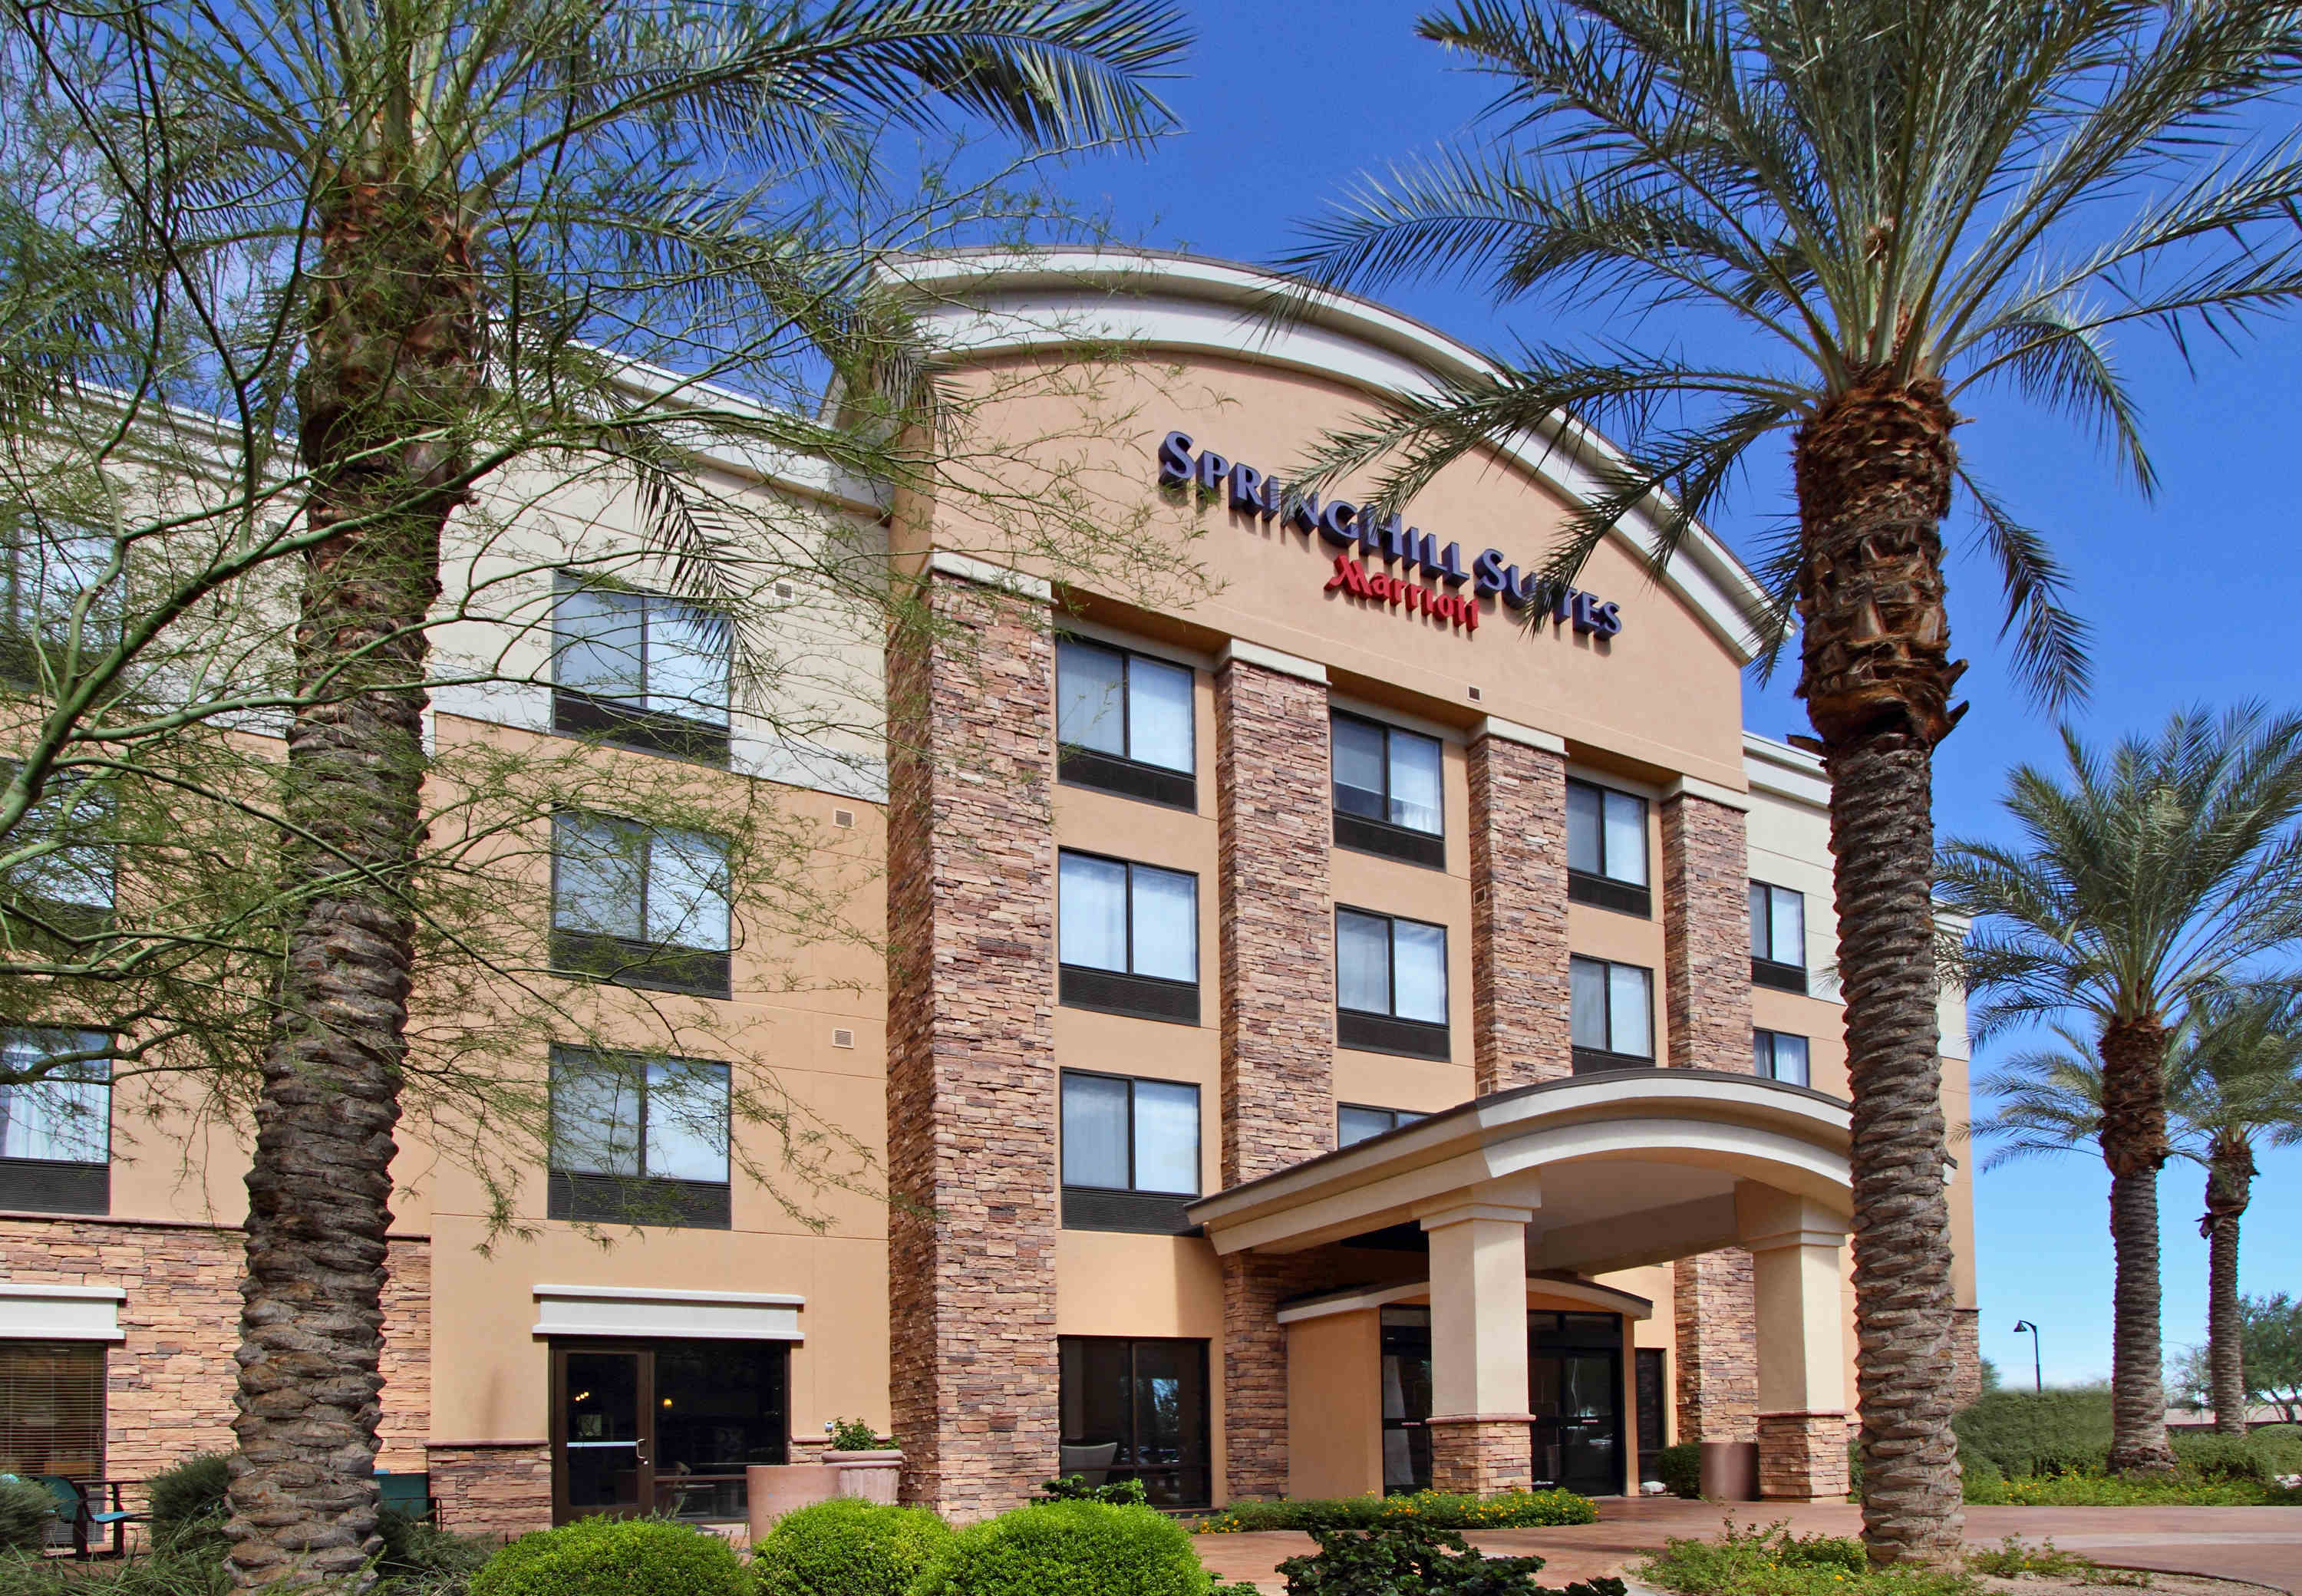 Photo of SpringHill Suites Phoenix Glendale Sports & Entertainment District, Glendale, AZ